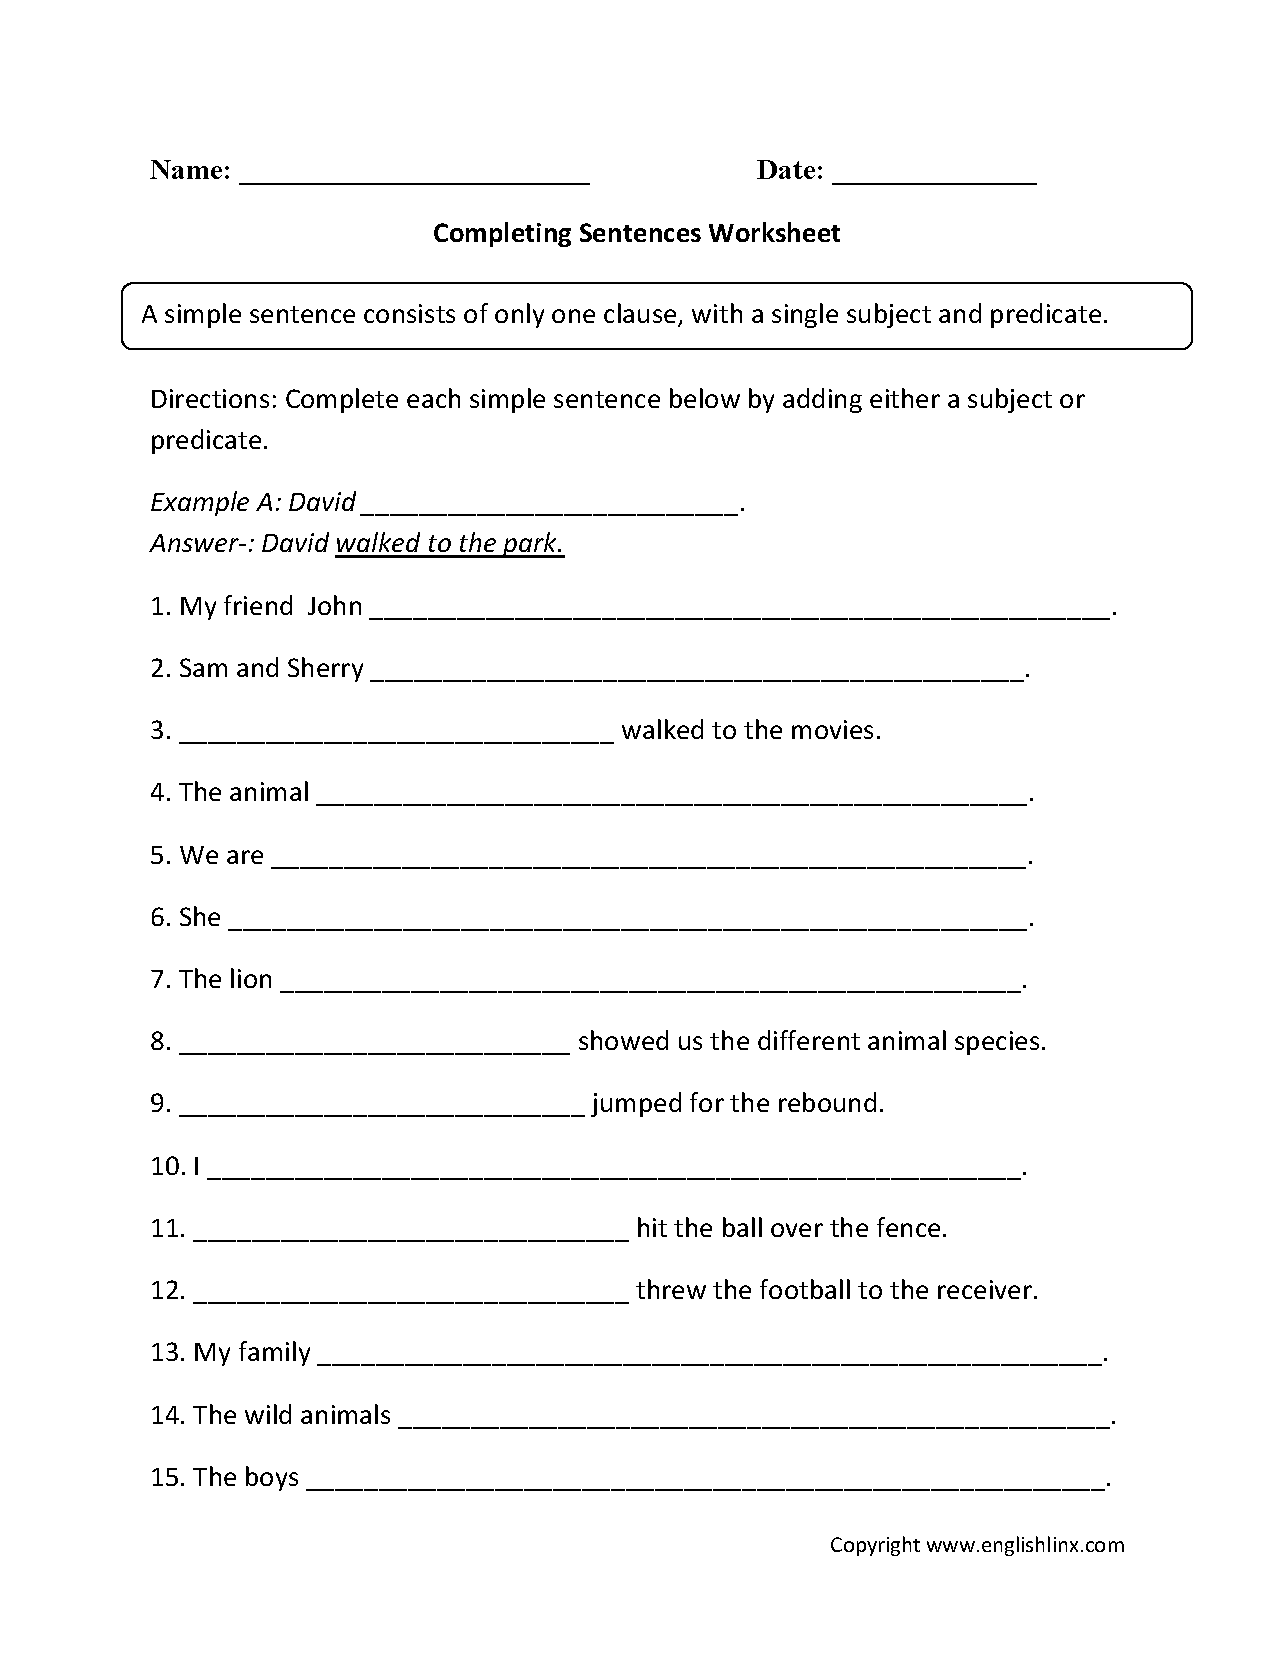 simple-sentences-worksheet-writing-sentences-worksheets-sentence-writing-activities-making